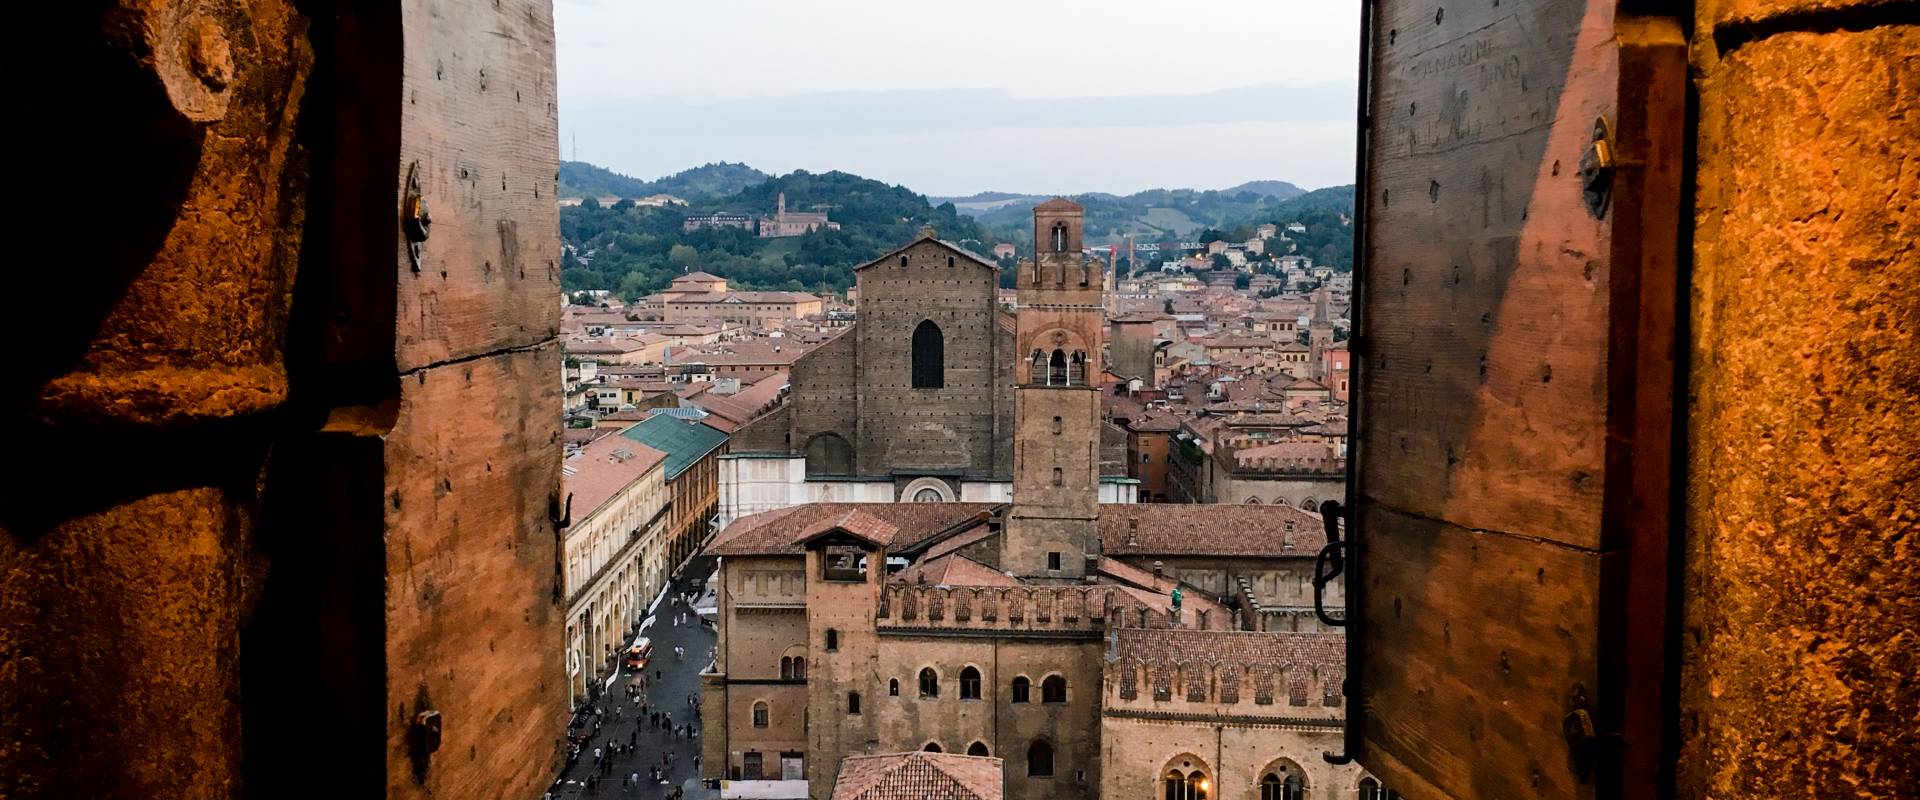 Palazzo Re Enzo e la Basilica di San Petronio visti dal campanile della Cattedrale di San Pietro photo by Roberto Carisi